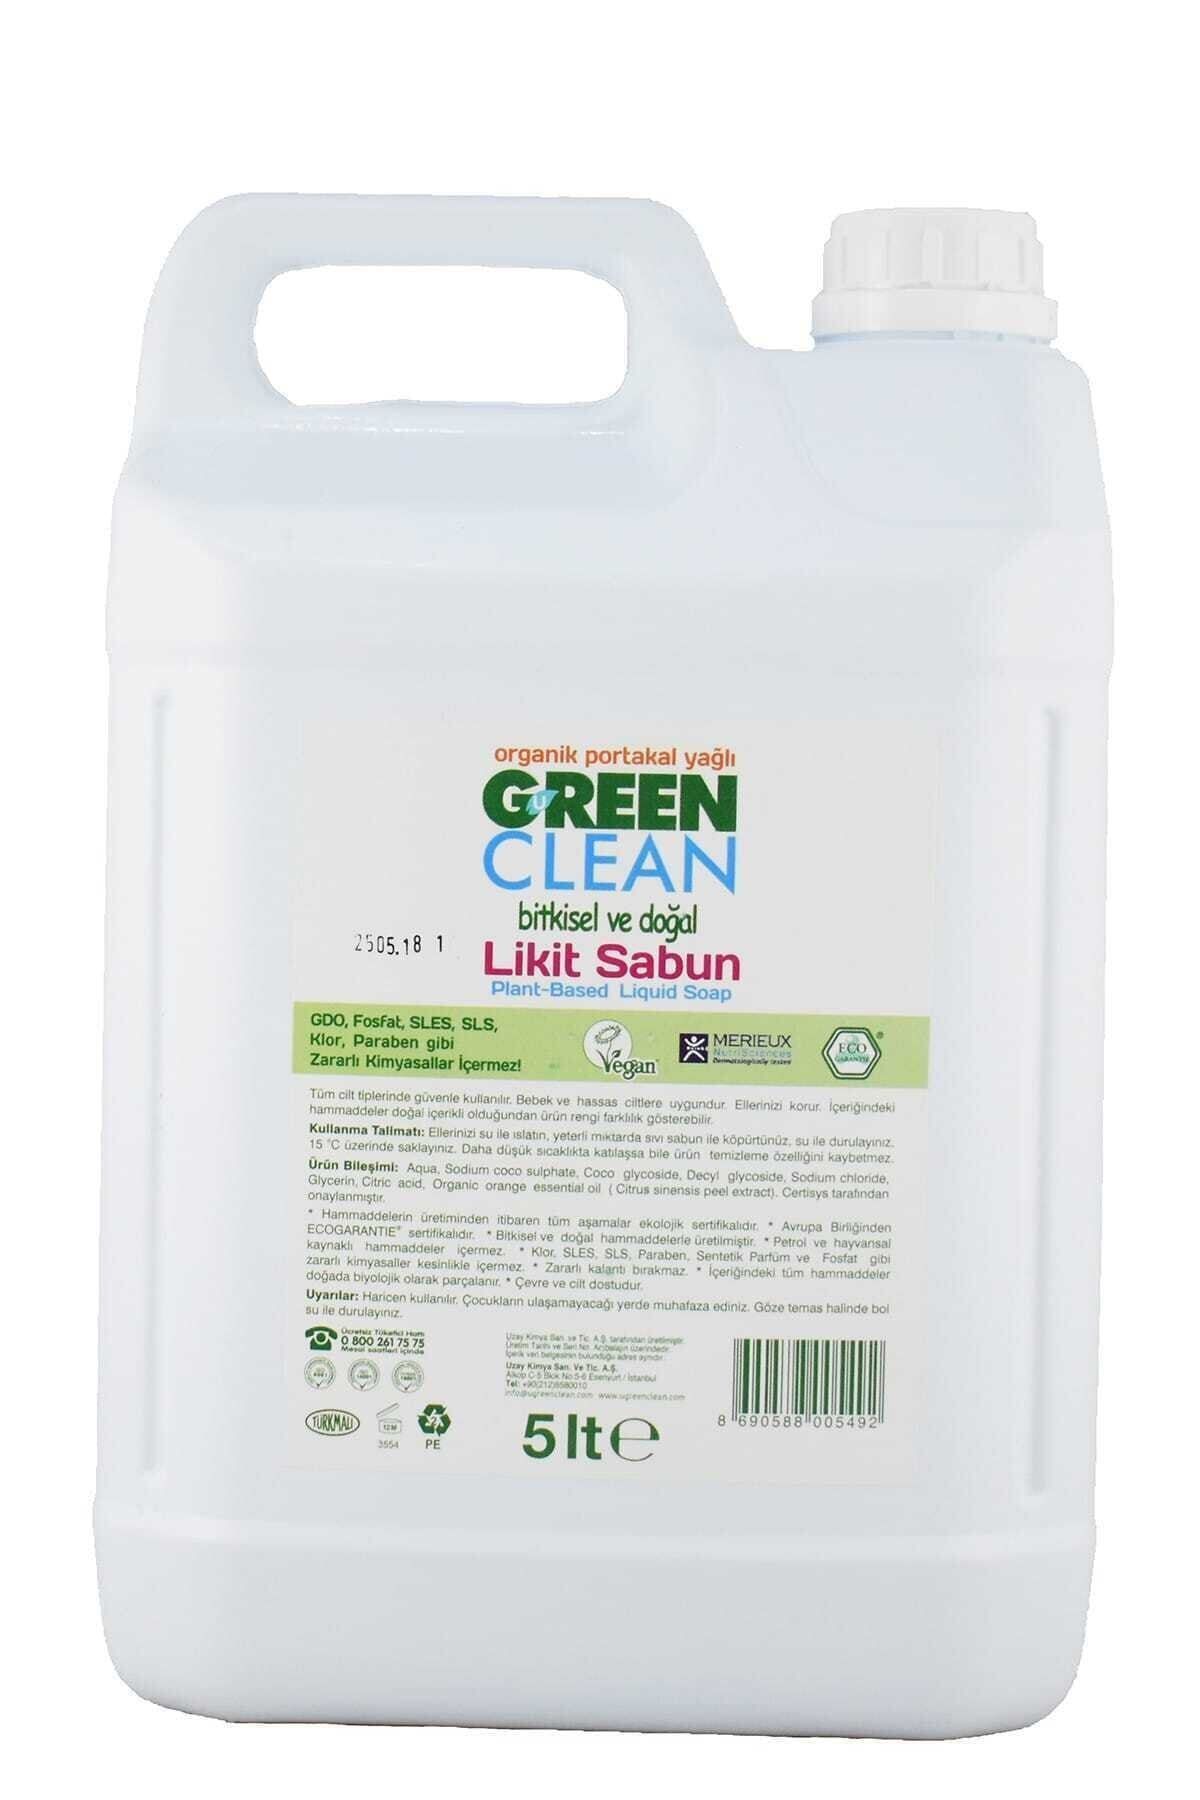 Green Clean Organik Portakal Yağlı Bitkisel Doğal Sıvı El Sabunu 5 lt